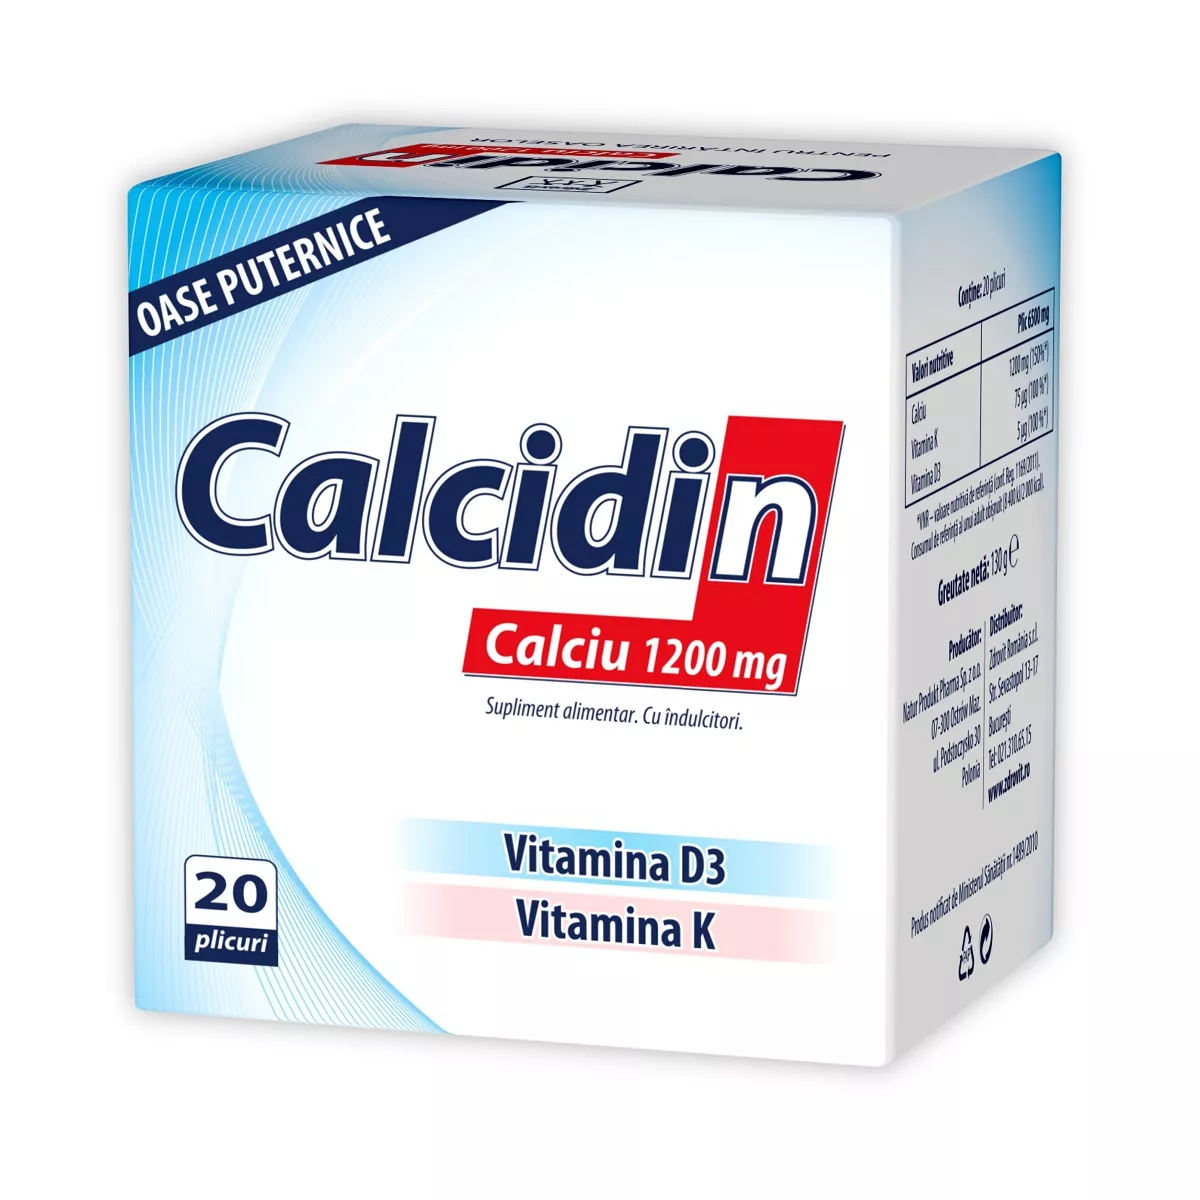 CALCIDIN X 20 PLICURI ZDROVIT, [],larafarm.ro